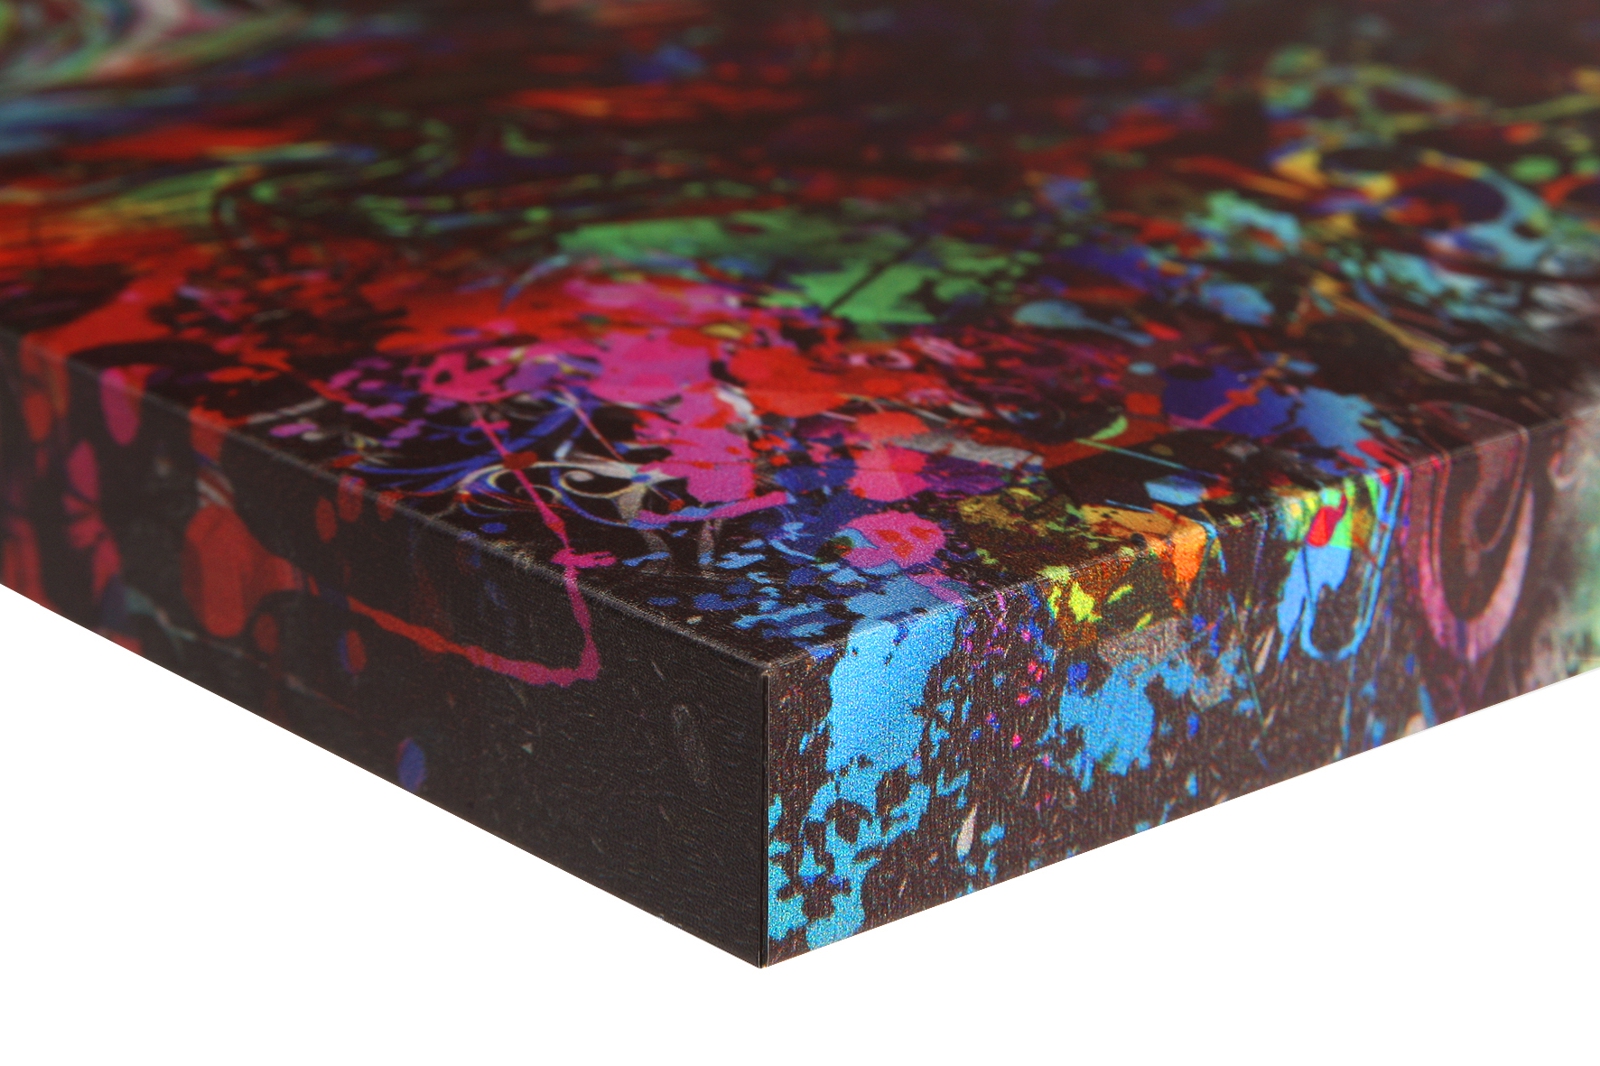 Magnettafel Pinnwand Bild Abstrakt Farben bunt gekantet